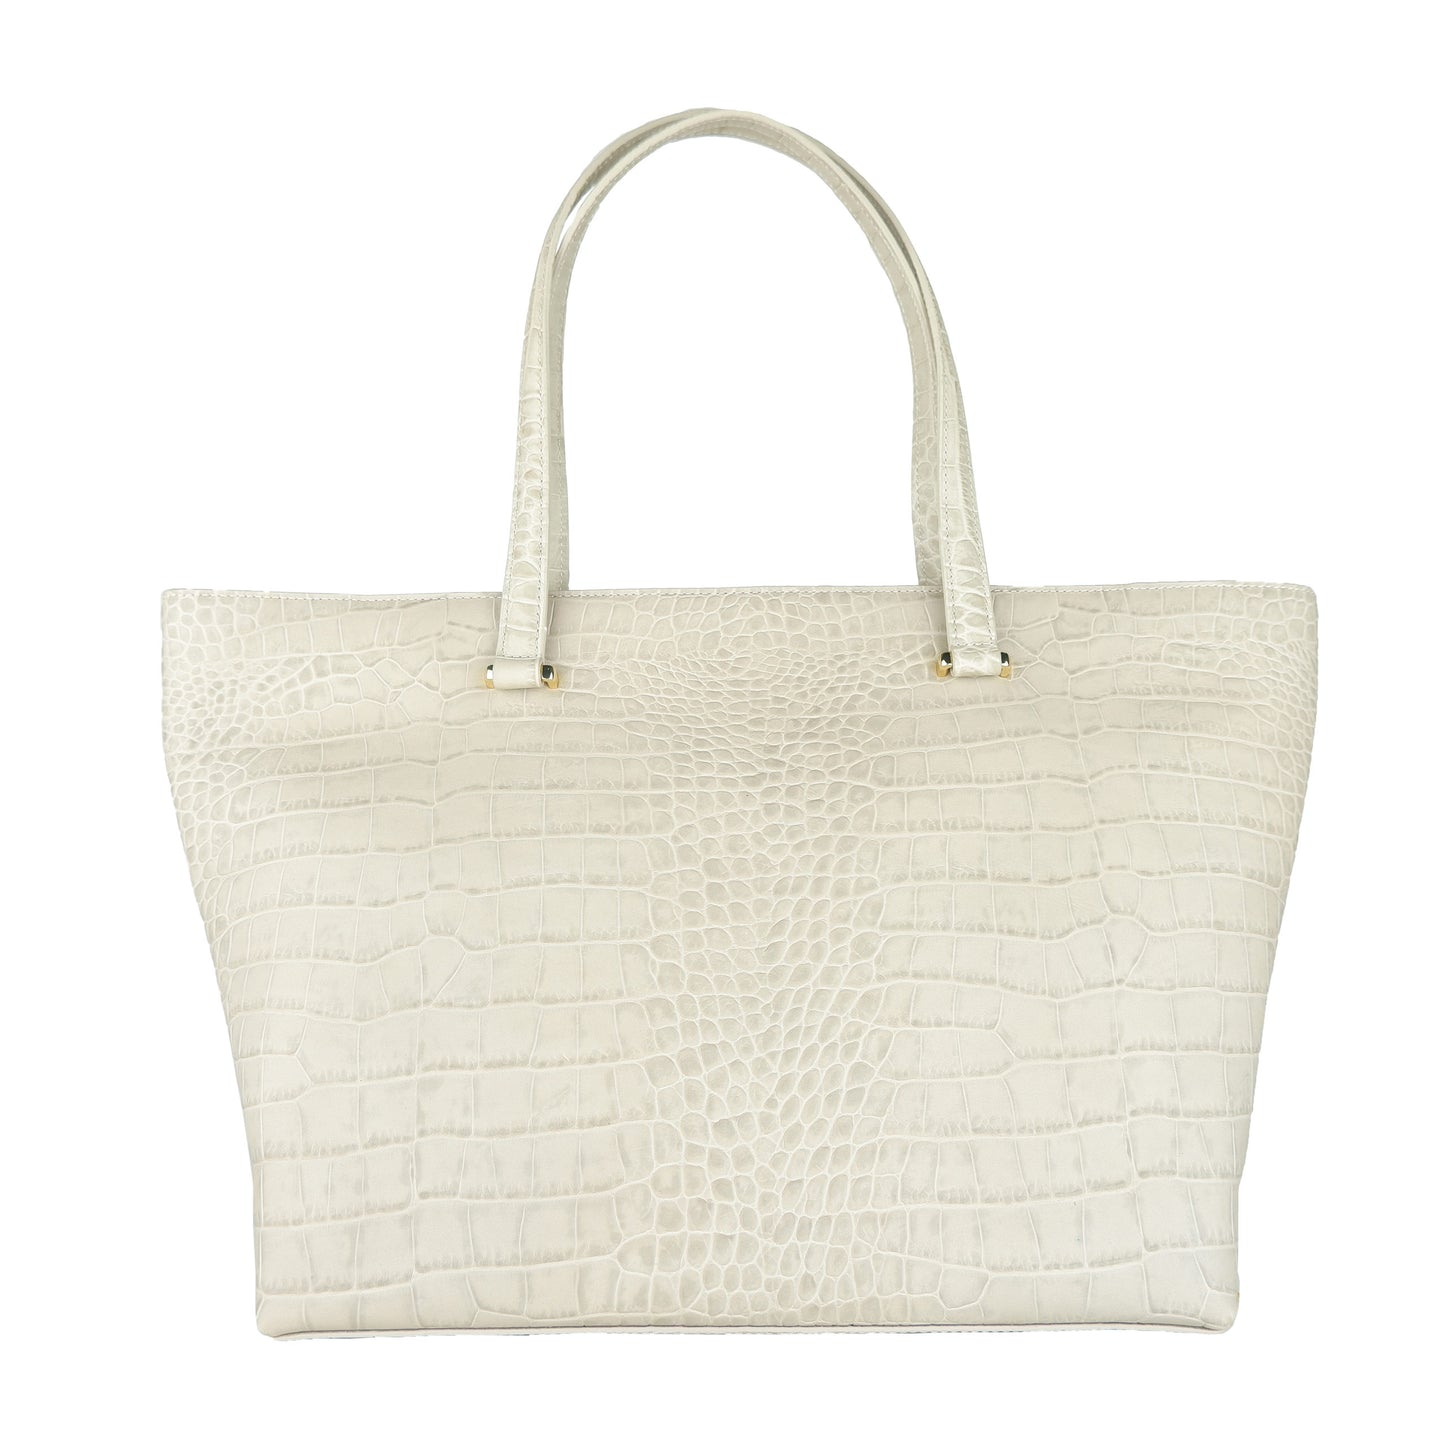 Bianco Calfskin Handbag